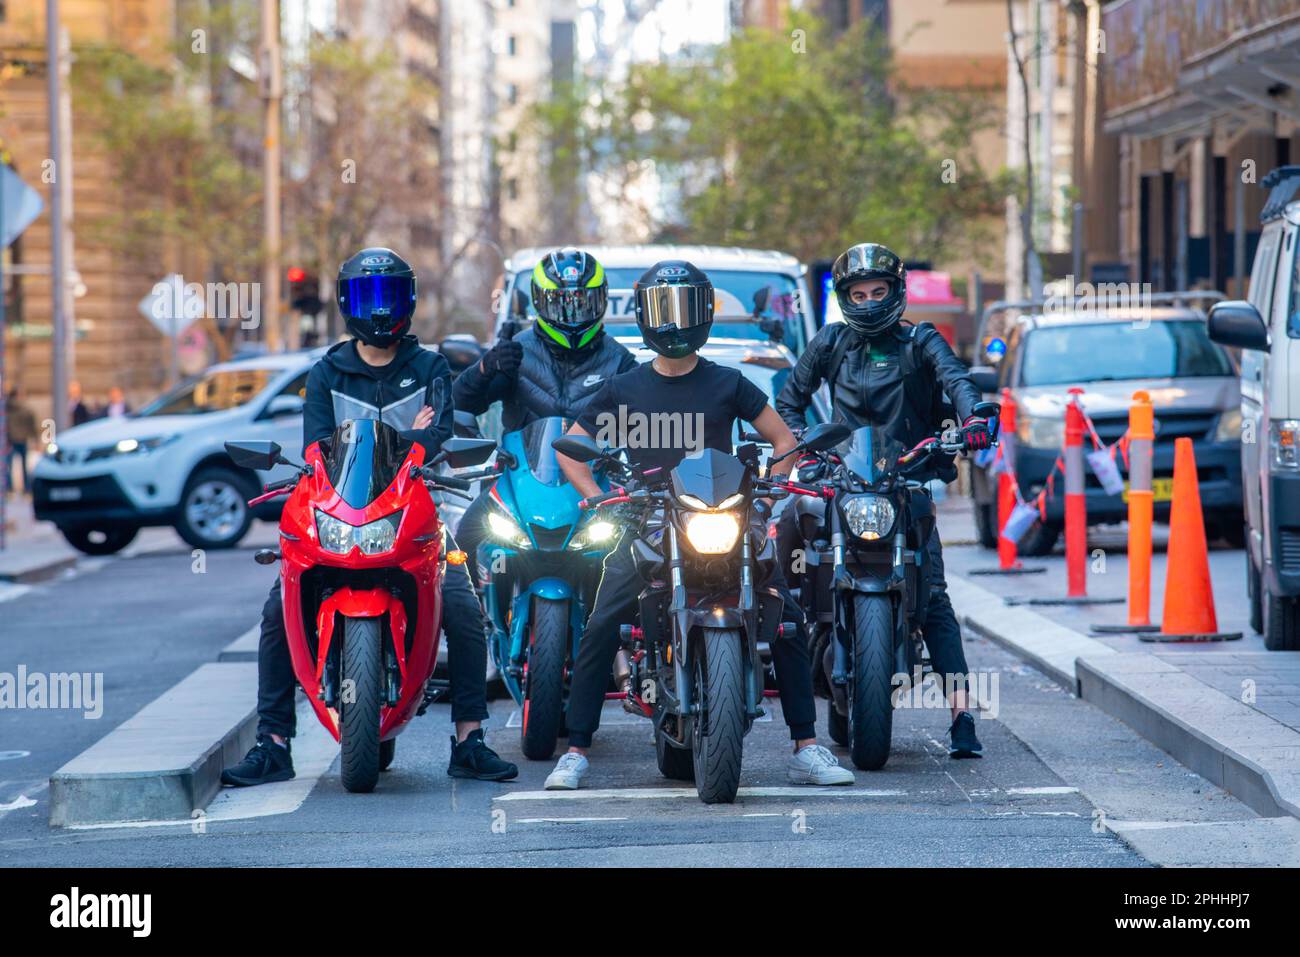 Vier Motorradfahrer, die vor der Kamera standen und Integralhelme trugen, hielten an einer Kreuzung in Pitt Street, Sydney, Australien Stockfoto